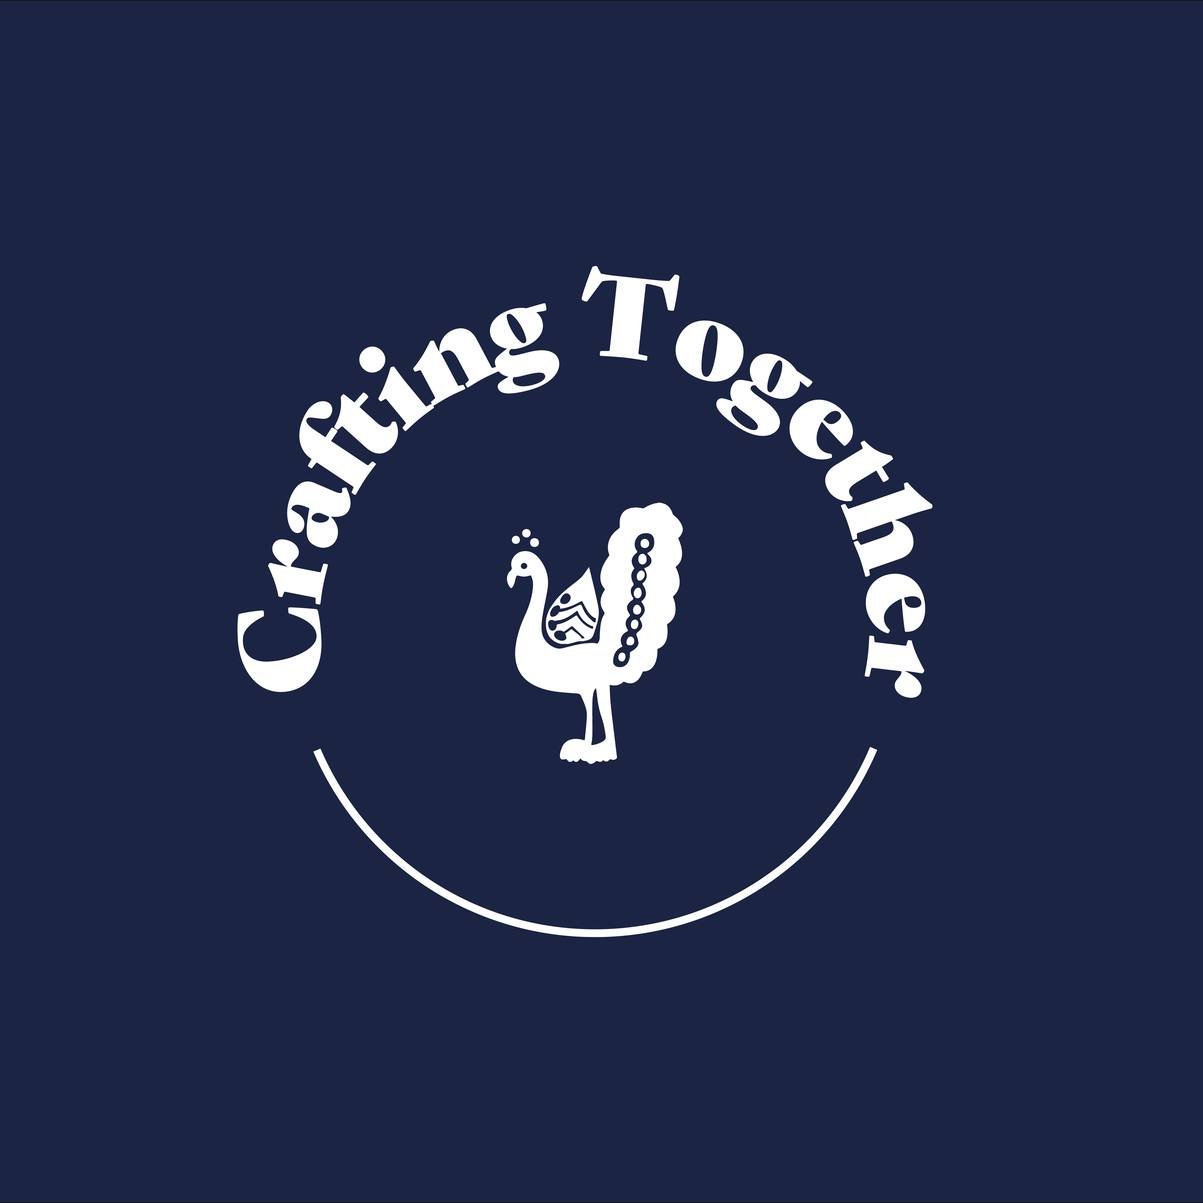 Crafting Together logo